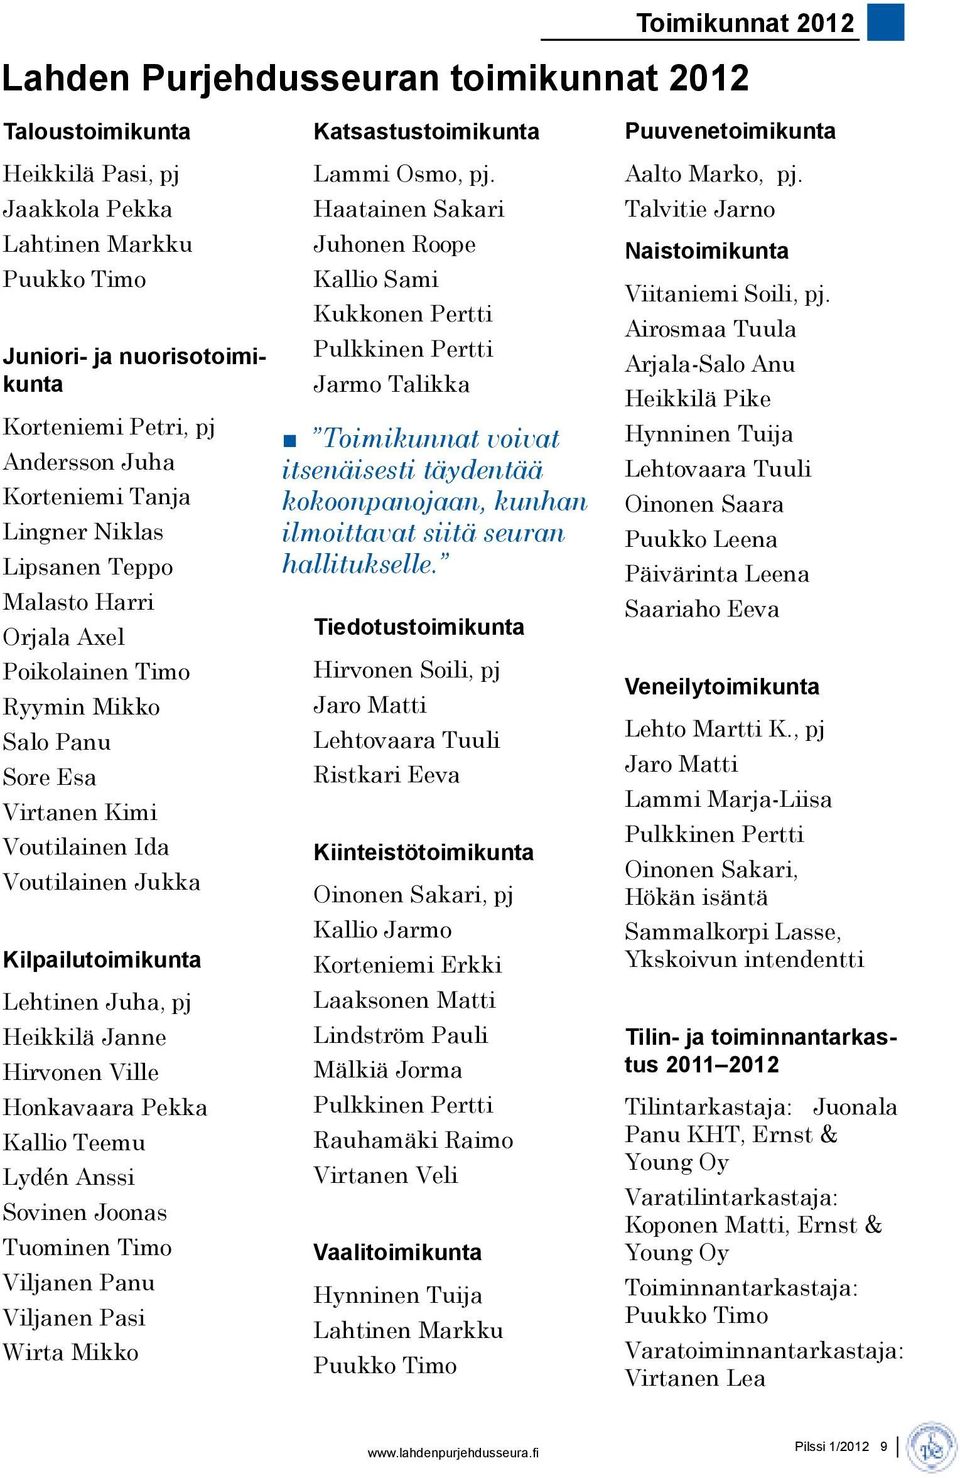 Lehtinen Juha, pj Heikkilä Janne Hirvonen Ville Honkavaara Pekka Kallio Teemu Lydén Anssi Sovinen Joonas Tuominen Timo Viljanen Panu Viljanen Pasi Wirta Mikko Katsastustoimikunta Lammi Osmo, pj.